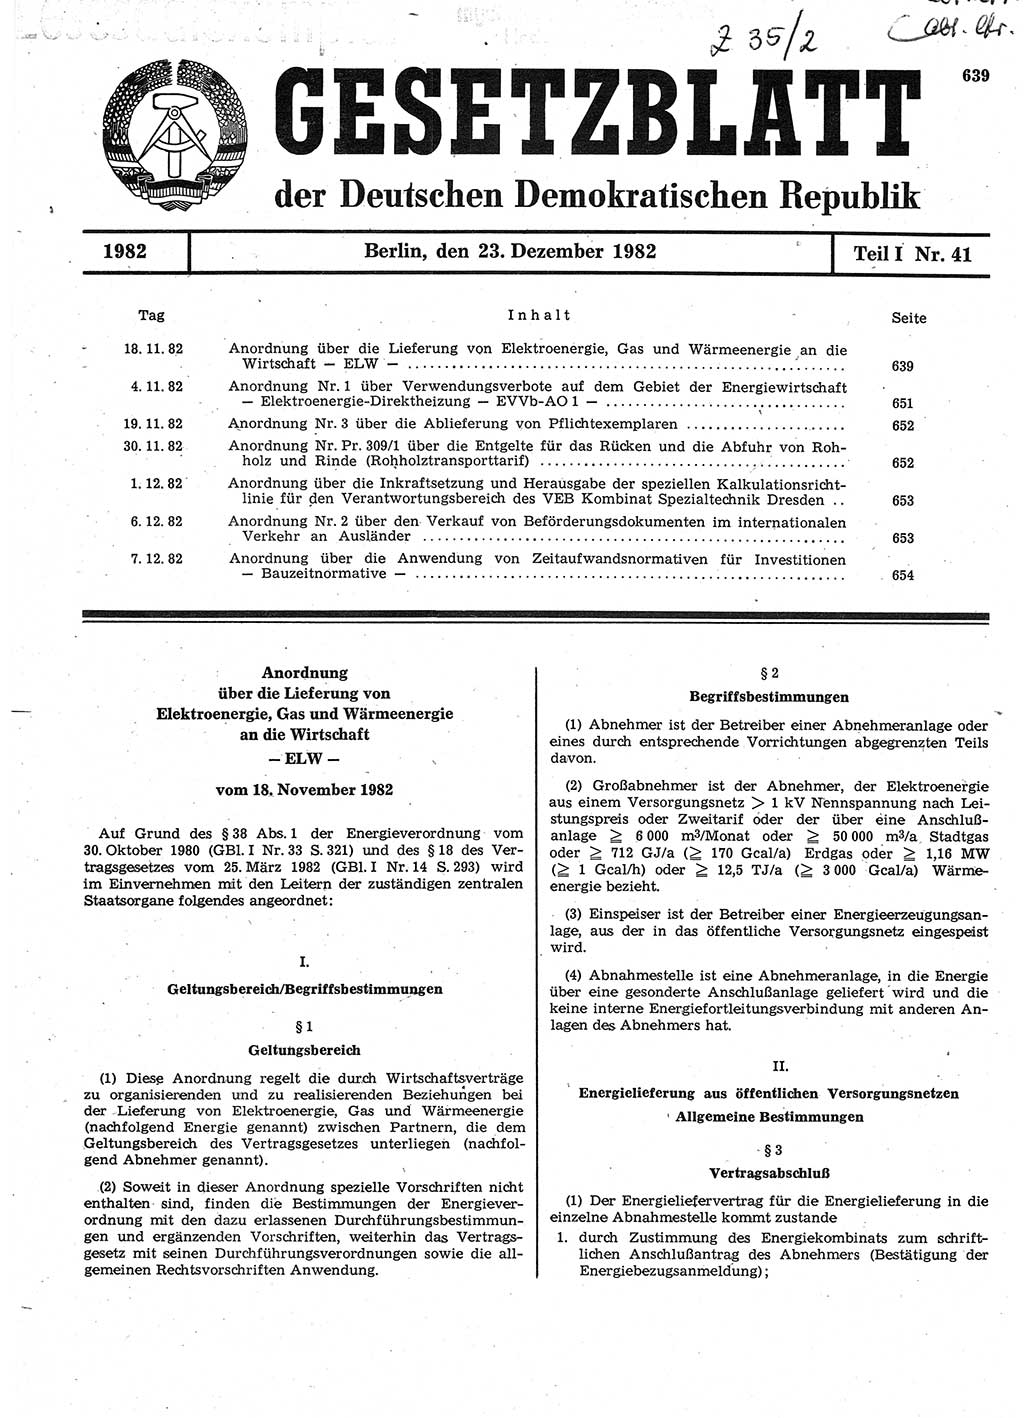 Gesetzblatt (GBl.) der Deutschen Demokratischen Republik (DDR) Teil Ⅰ 1982, Seite 639 (GBl. DDR Ⅰ 1982, S. 639)